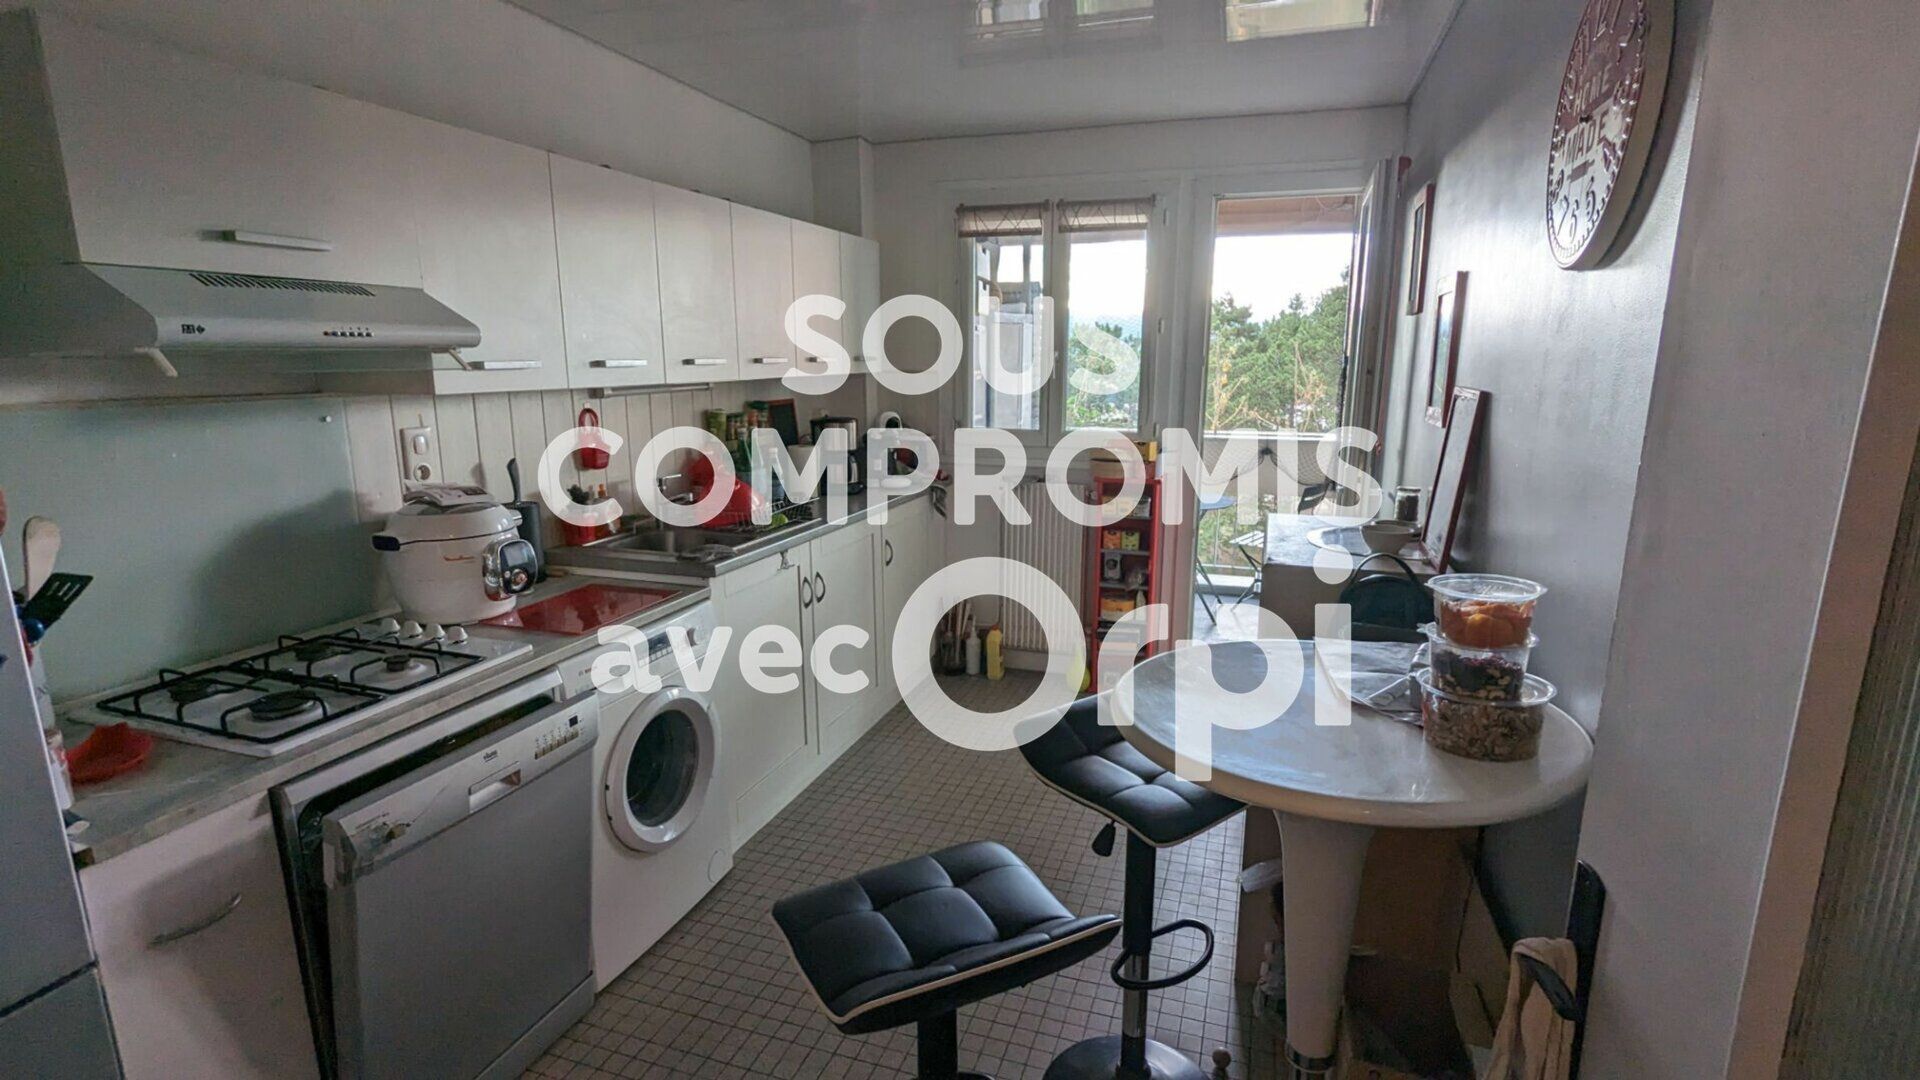 Appartement à vendre 3 67.33m2 à Cournon-d'Auvergne vignette-3